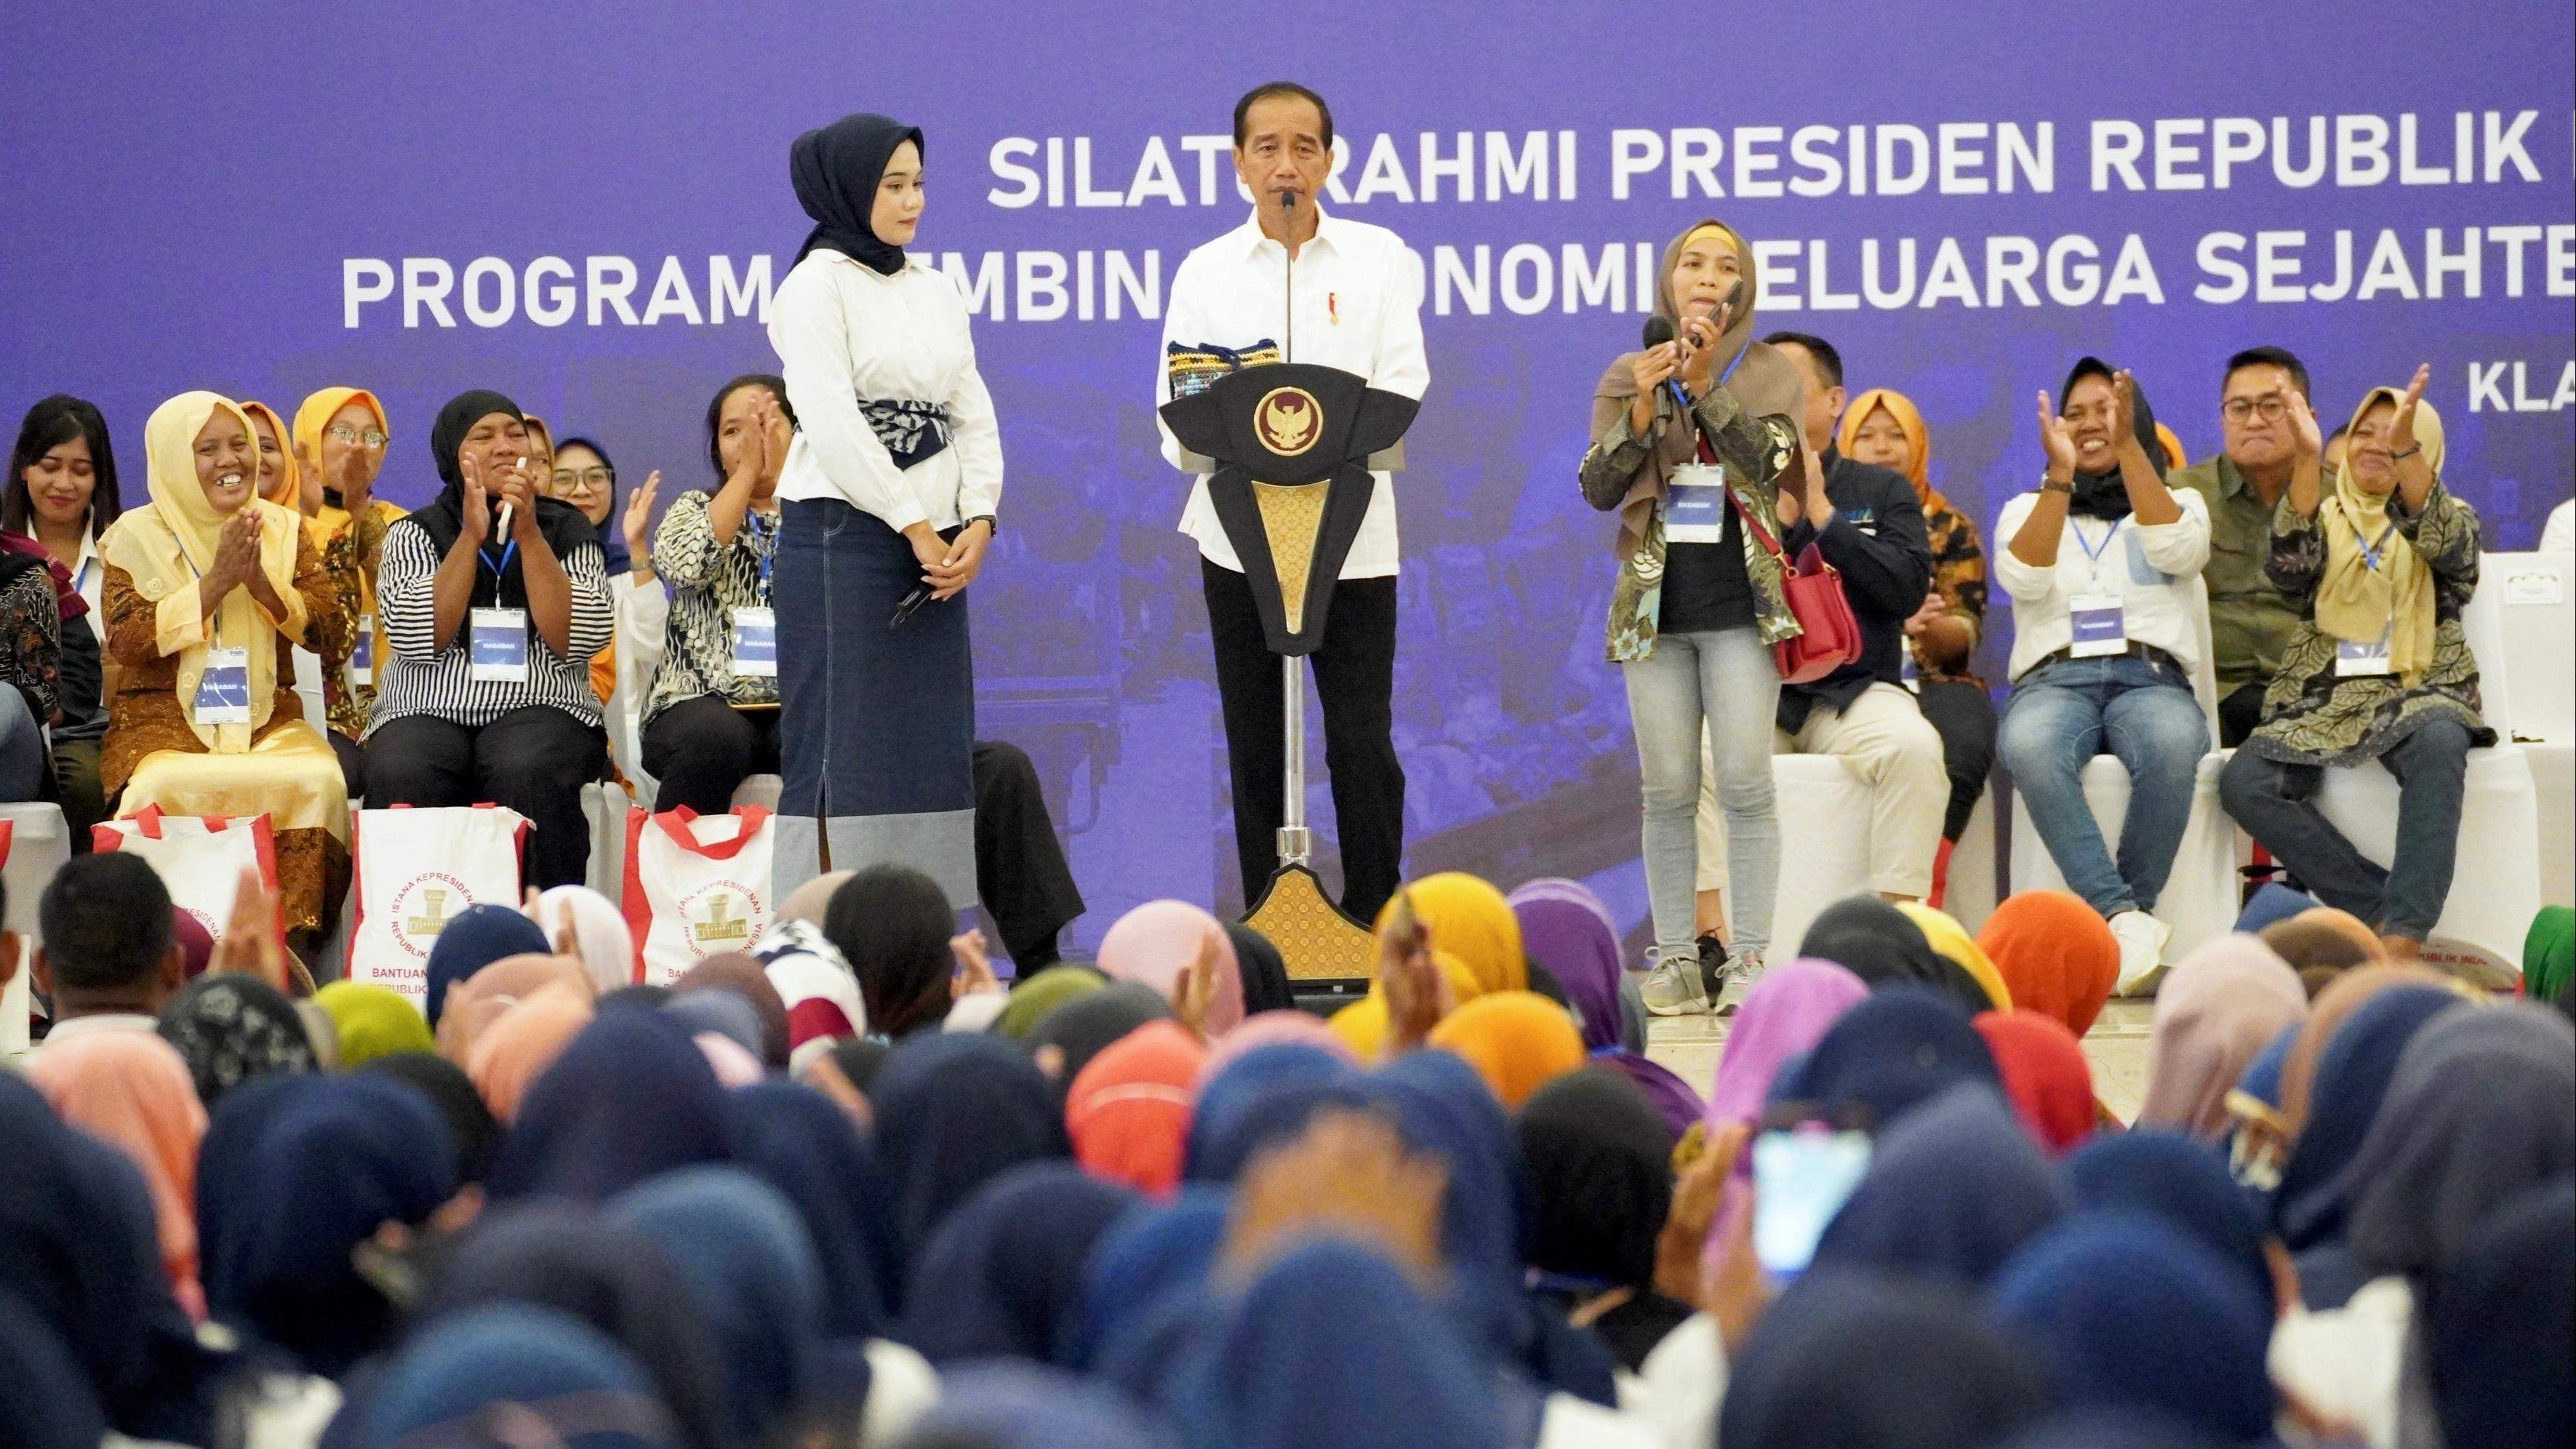 Presiden RI Jokowi apresiasi kinerja Account Officer (AO) PNM saat lakukan silaturahmi dengan 1.500 dari Wilayah Klaten di Grha Bung Karno, Kabupaten Klaten, Jawa Tengah.